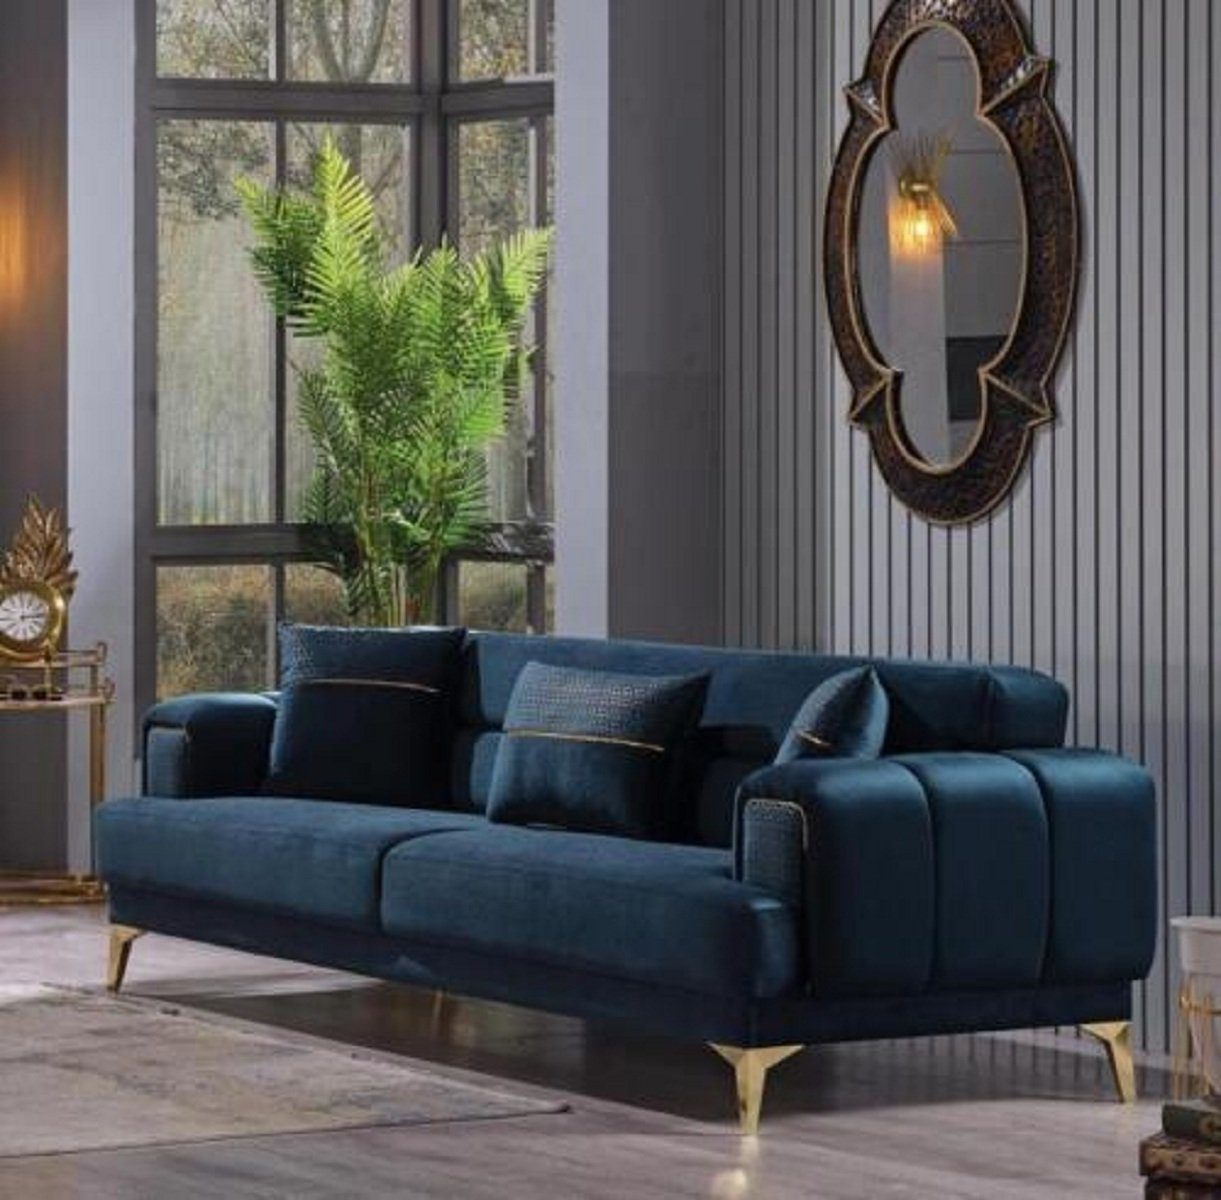 JVmoebel 3-Sitzer Blauer 3-Sitzer Wohnzimmermöbel Polster Couch Luxus Möbel Textilsofas, 1 Teile, Made in Europa